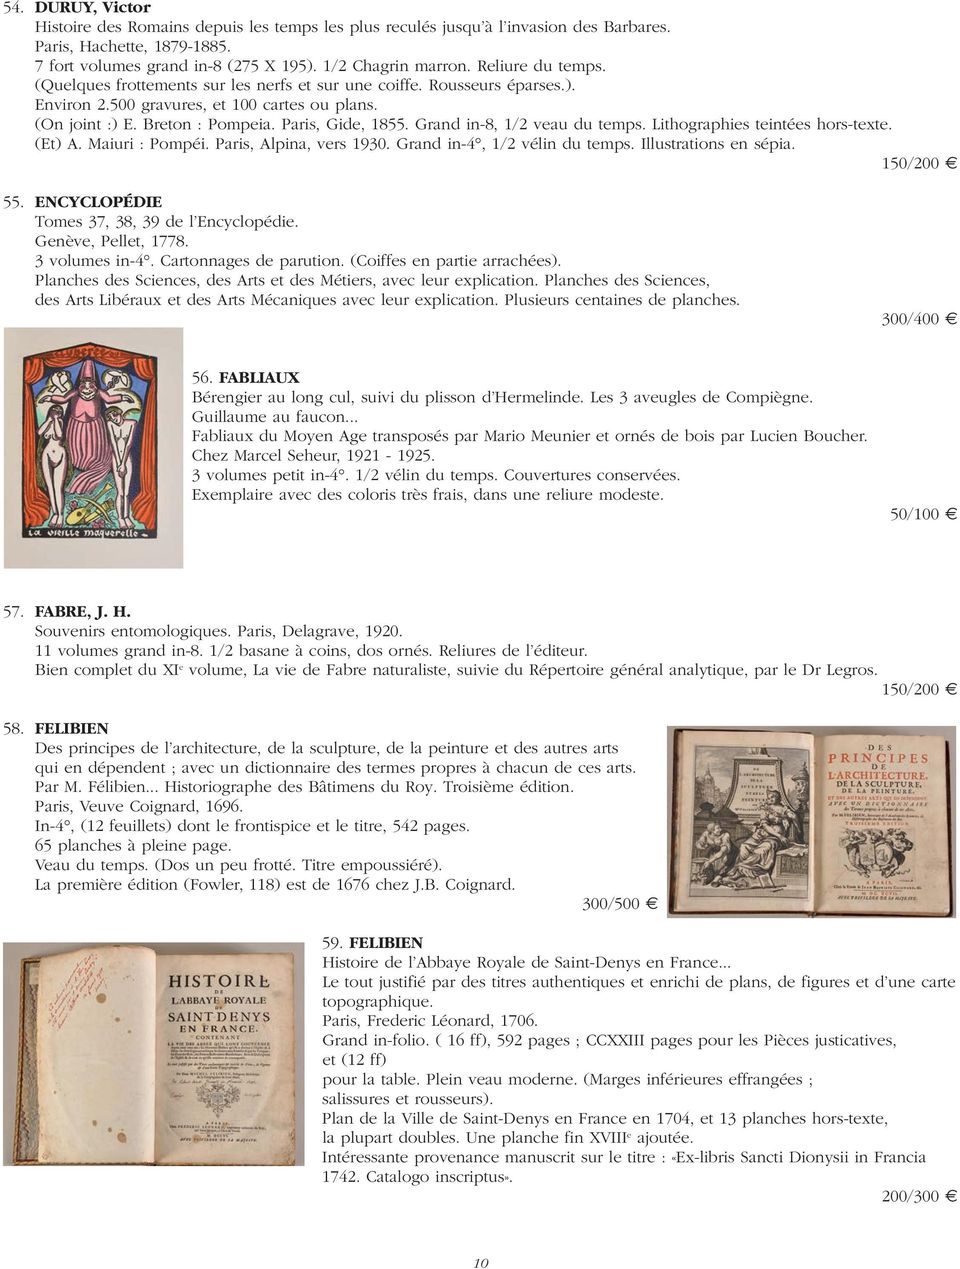 Grand in-8, 1/2 veau du temps. Lithographies teintées hors-texte. (Et) A. Maiuri : Pompéi. Paris, Alpina, vers 1930. Grand in-4, 1/2 vélin du temps. Illustrations en sépia. 55.